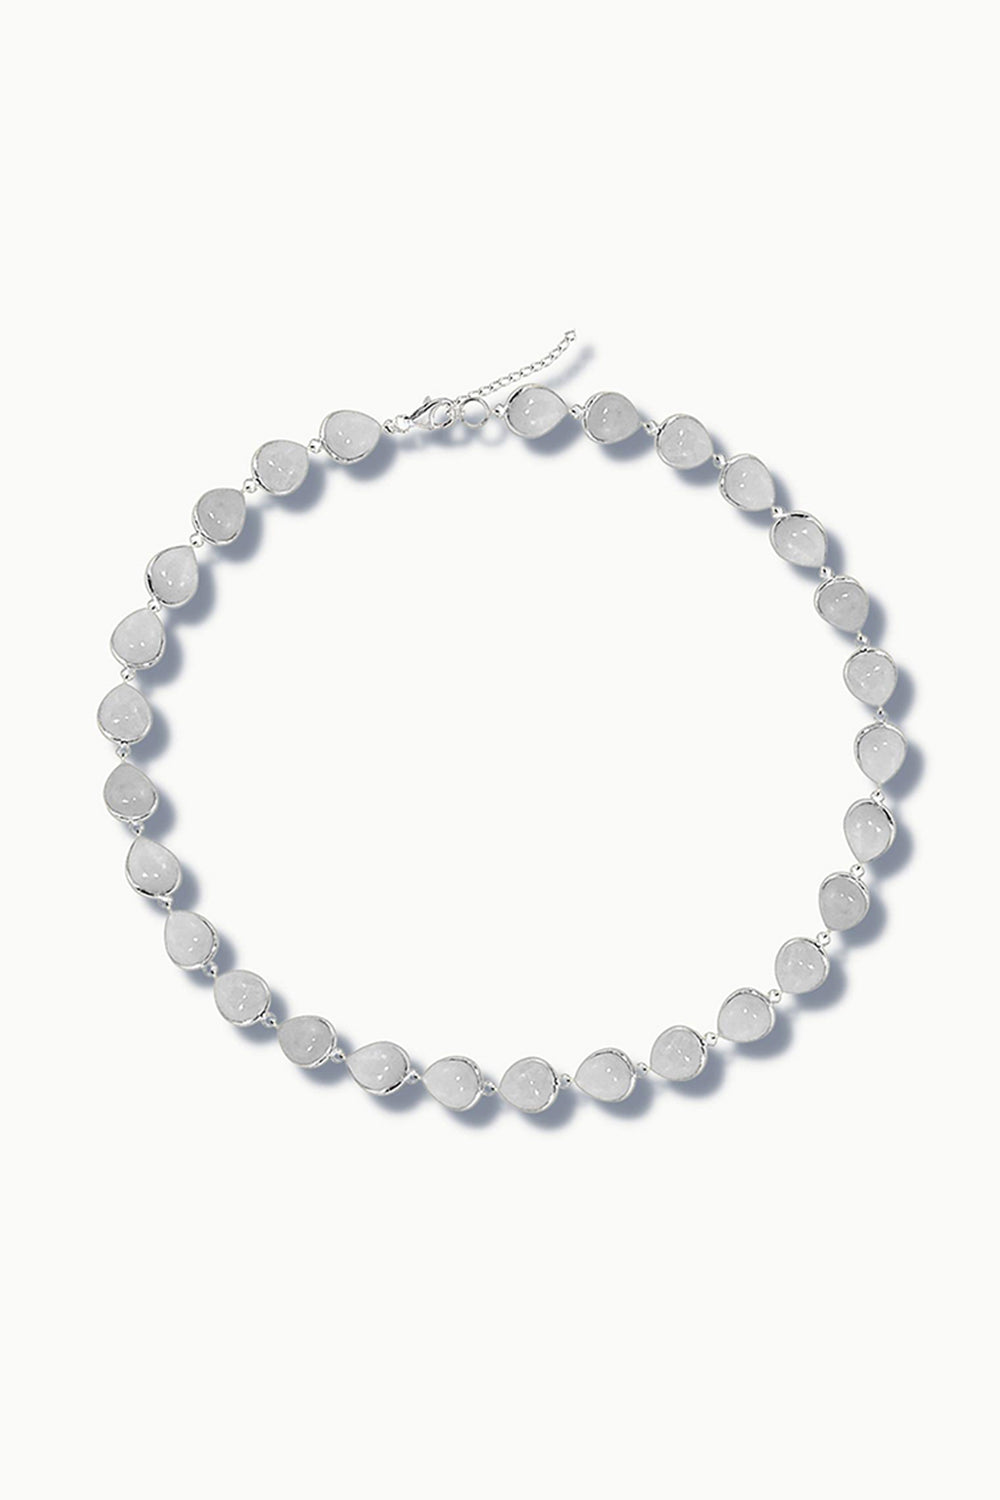 Moonstone Silver Necklace - Dew Drops